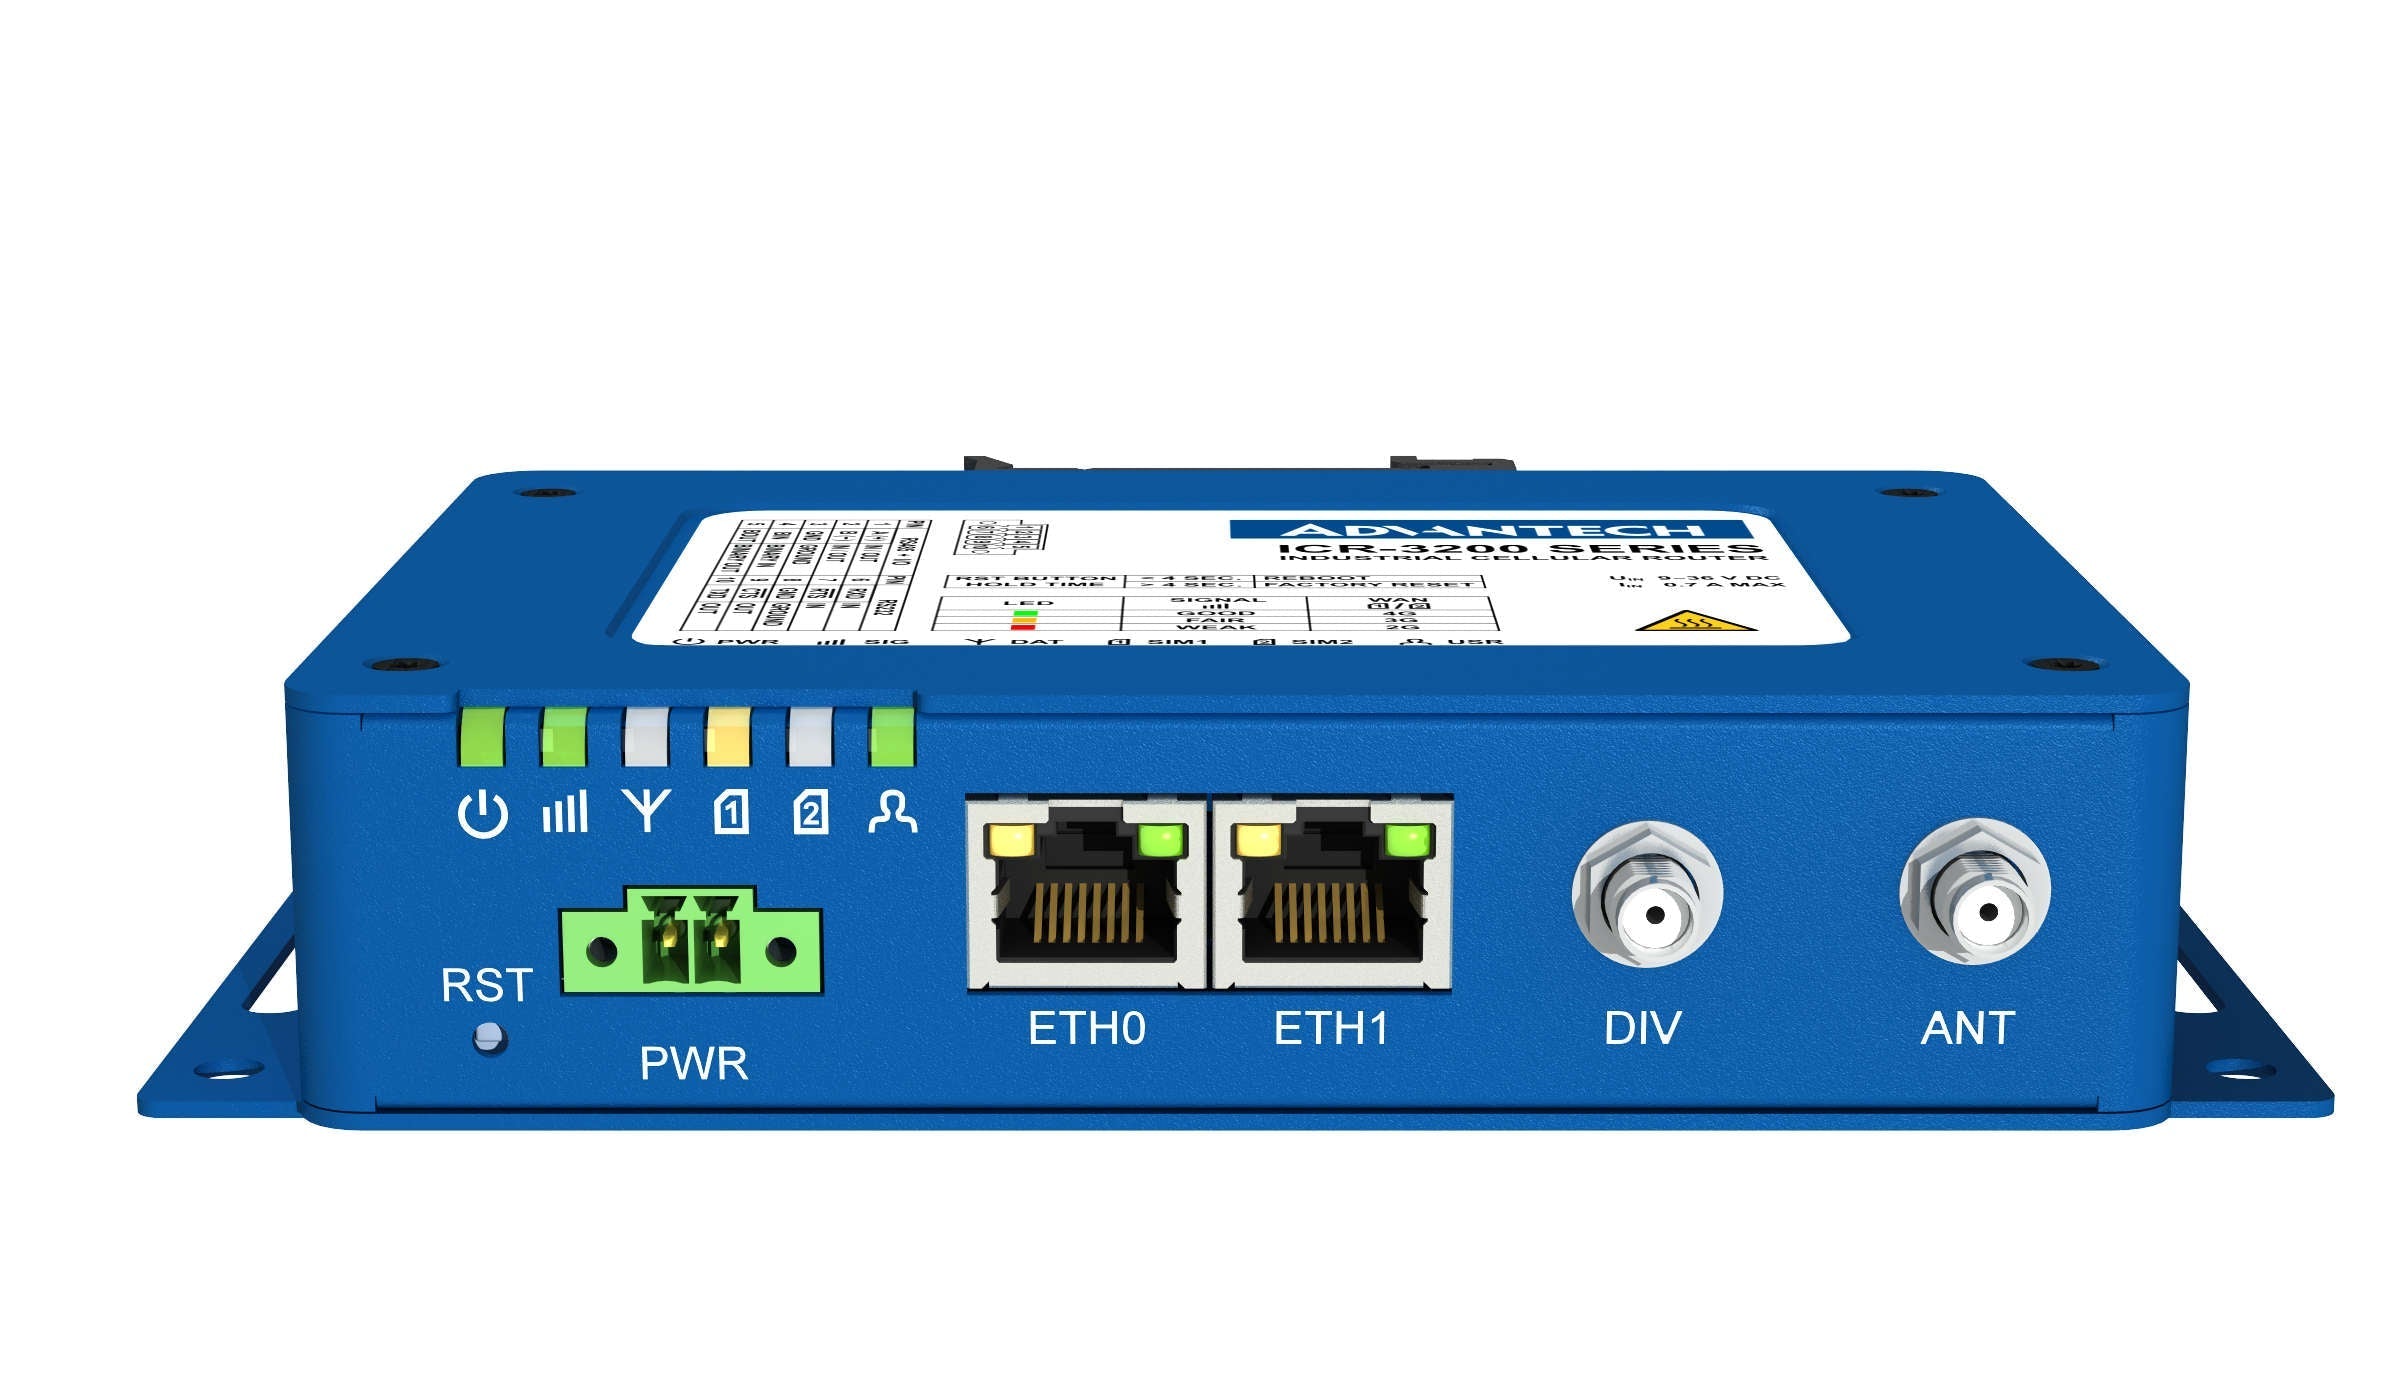 United Energy ICR-3232 4G/LTE ROUTER, KIT, DNP3